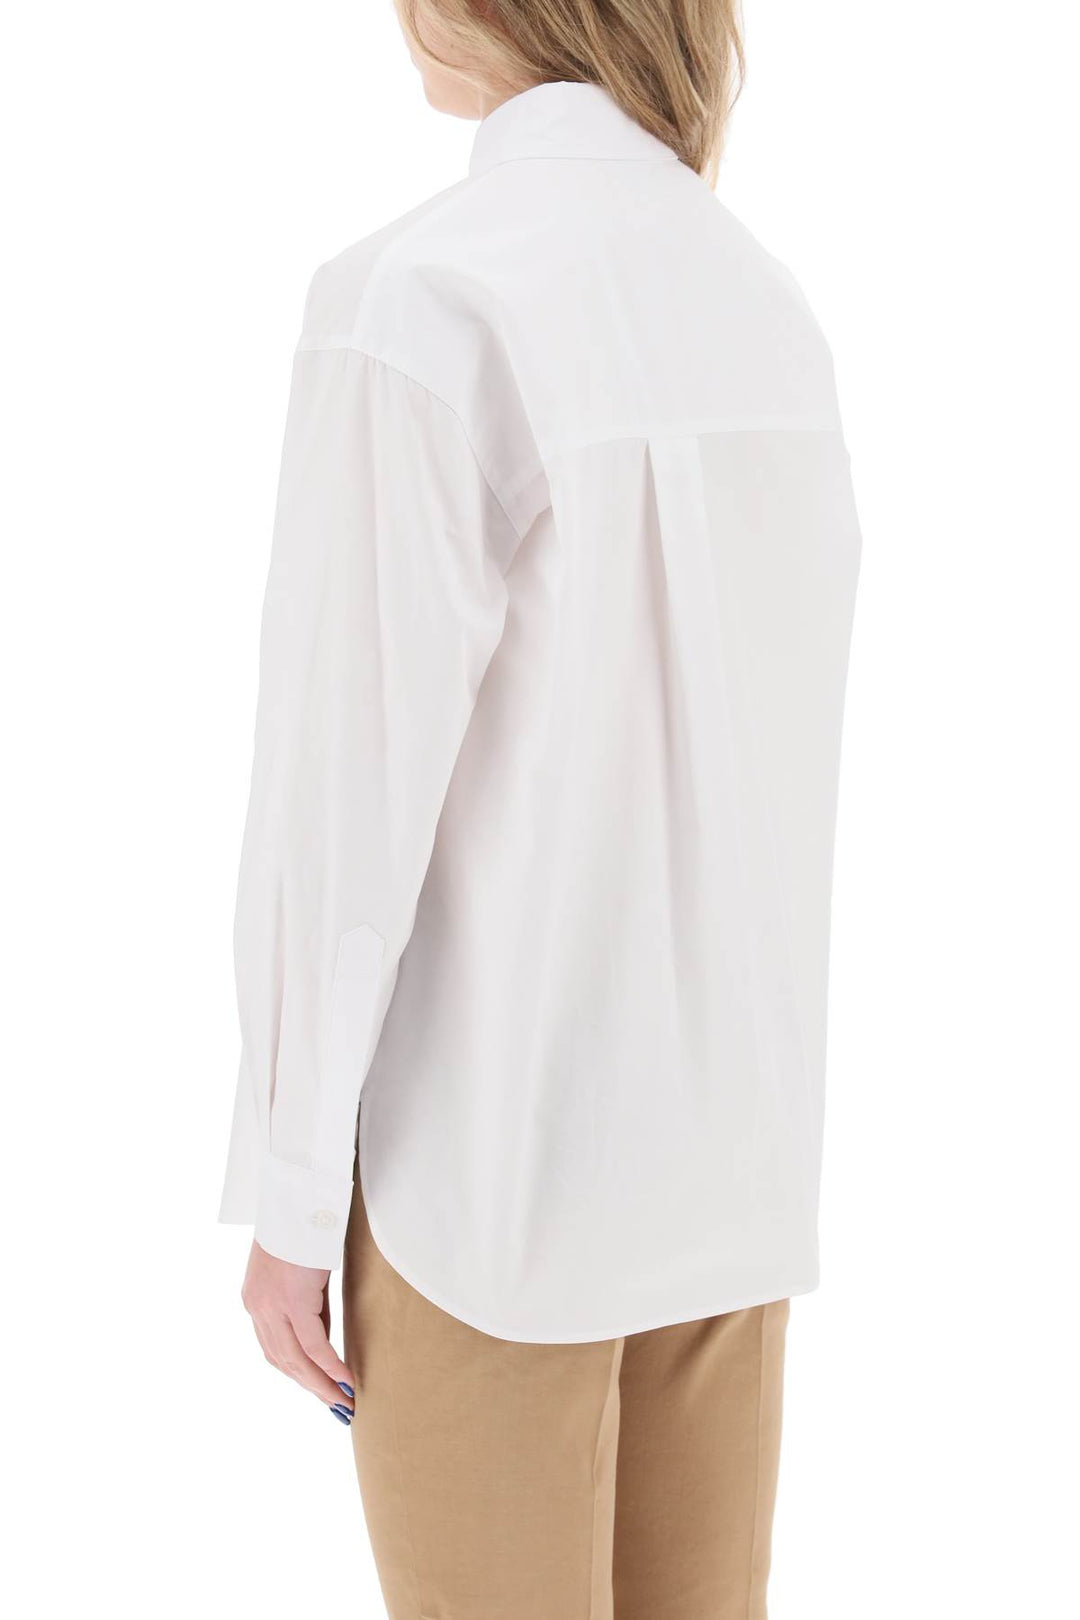 Pinko Cotton Popeline Shirt   Bianco